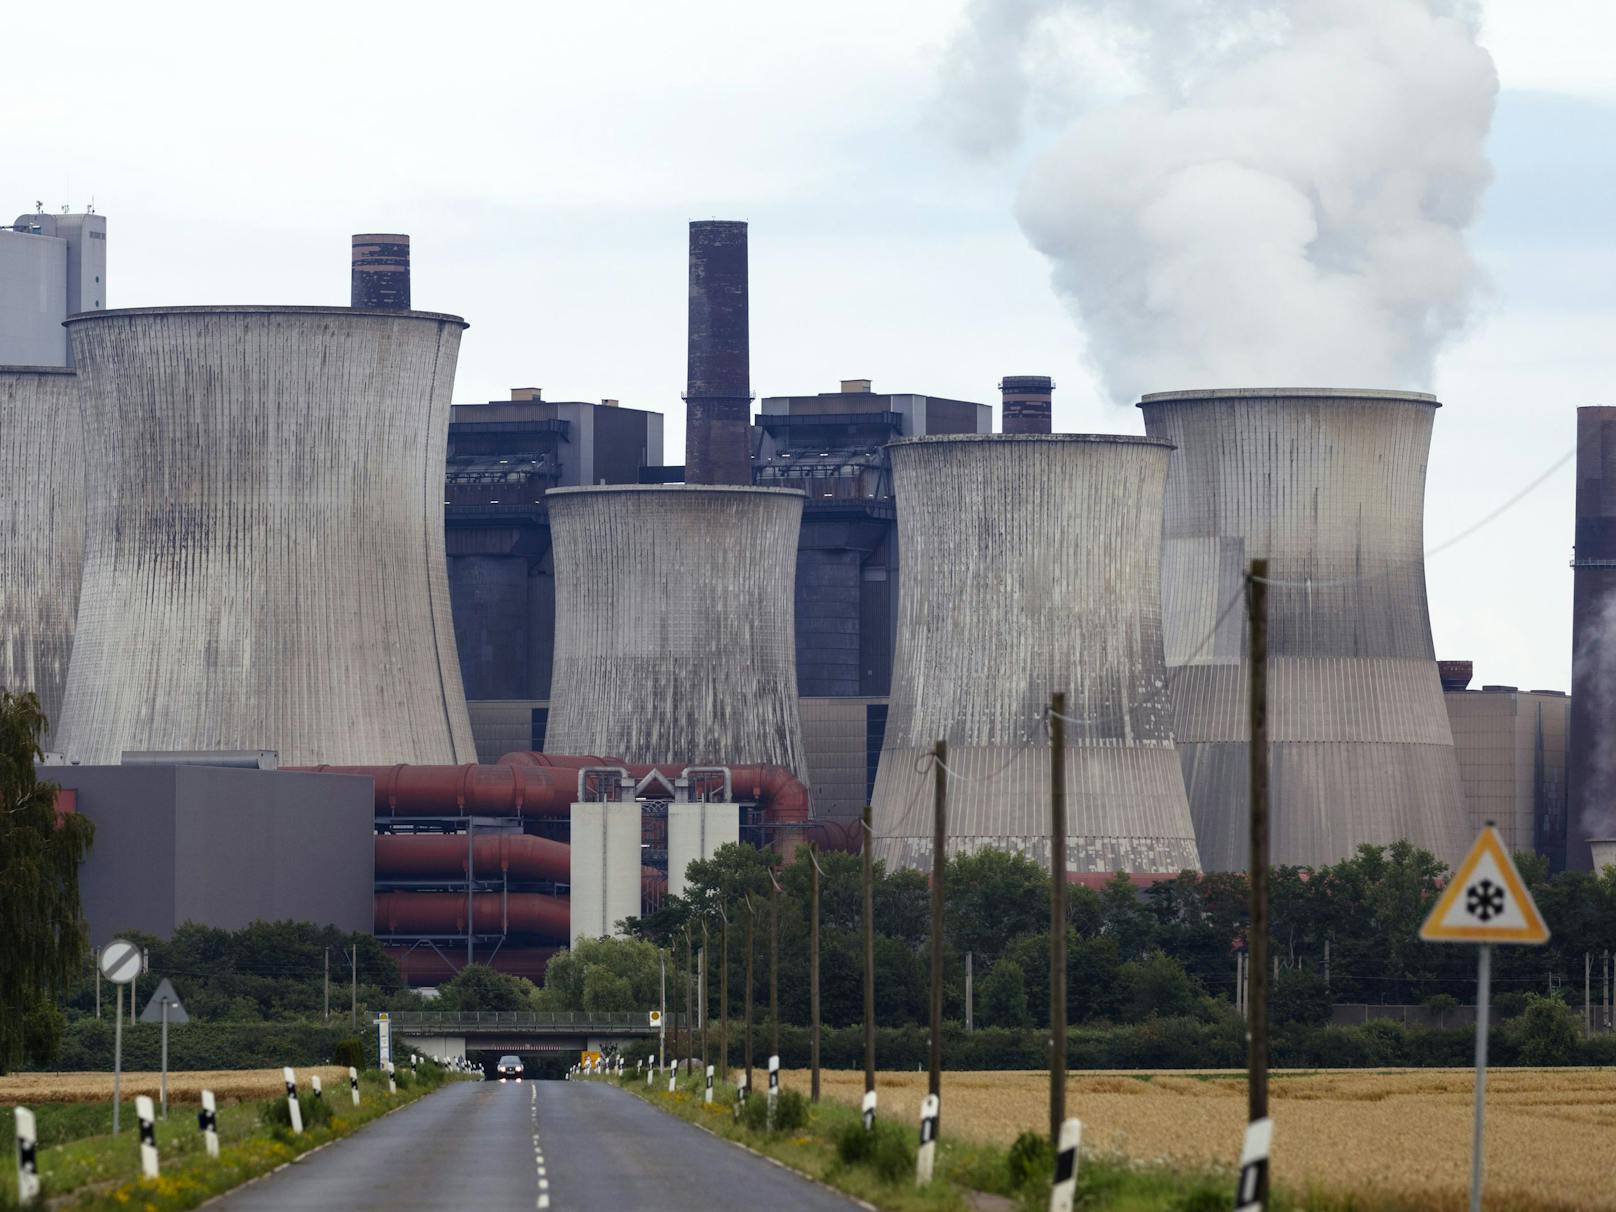 Braunkohle-Kraftwerke zur Stromerzeugung, wie hier in Niederaußem in Deutschland, stoßen enorme Mengen an CO2 aus.